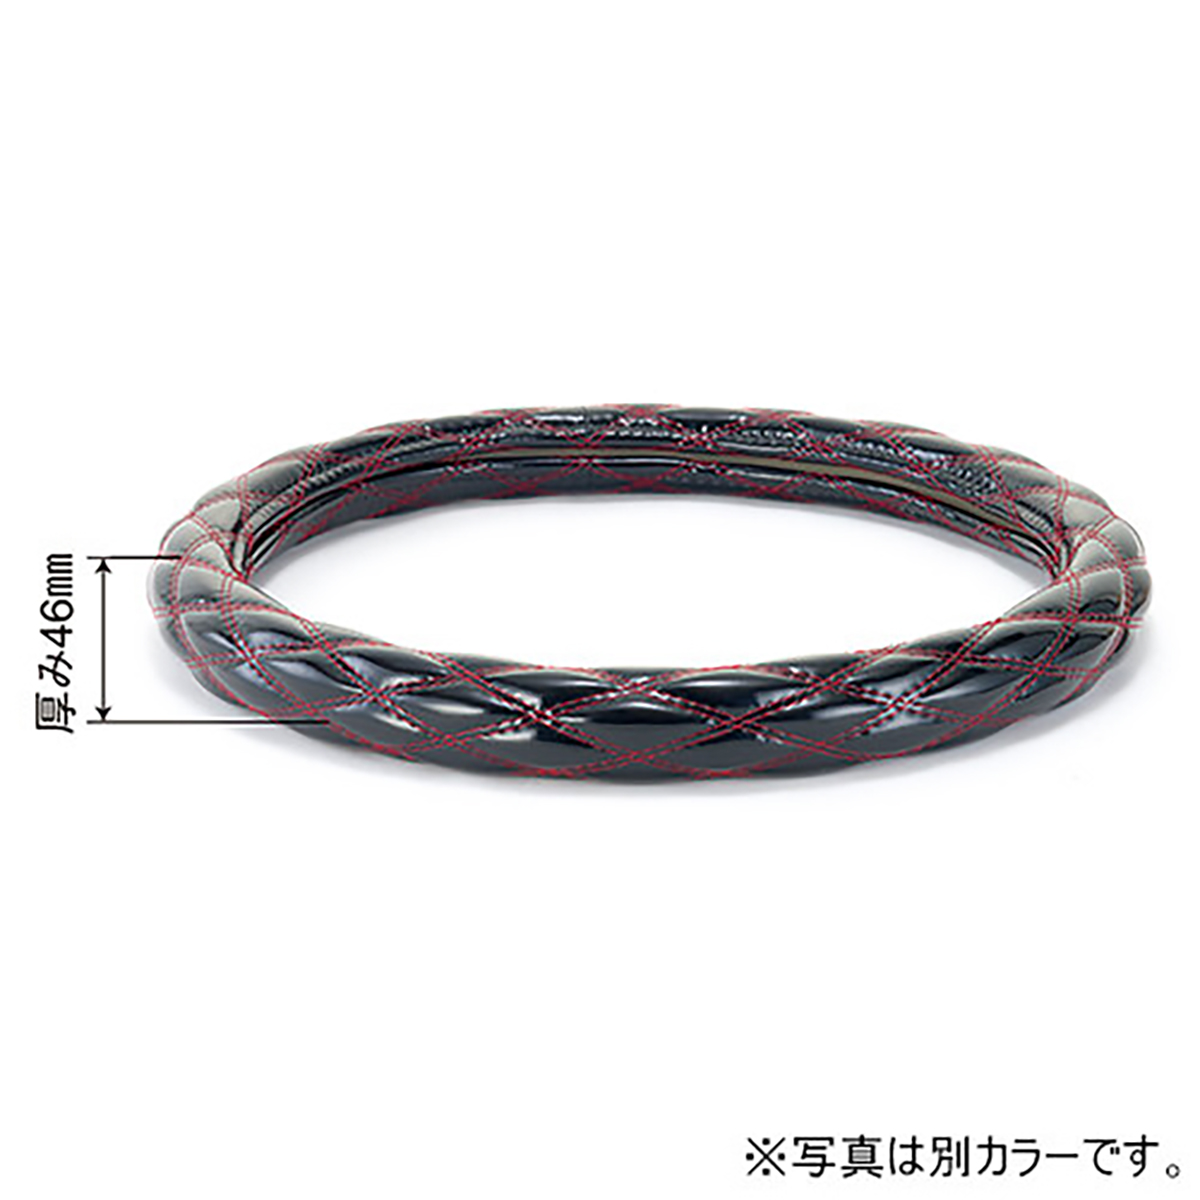 ハンドルカバー ハンドル外径48cm 黒/赤糸